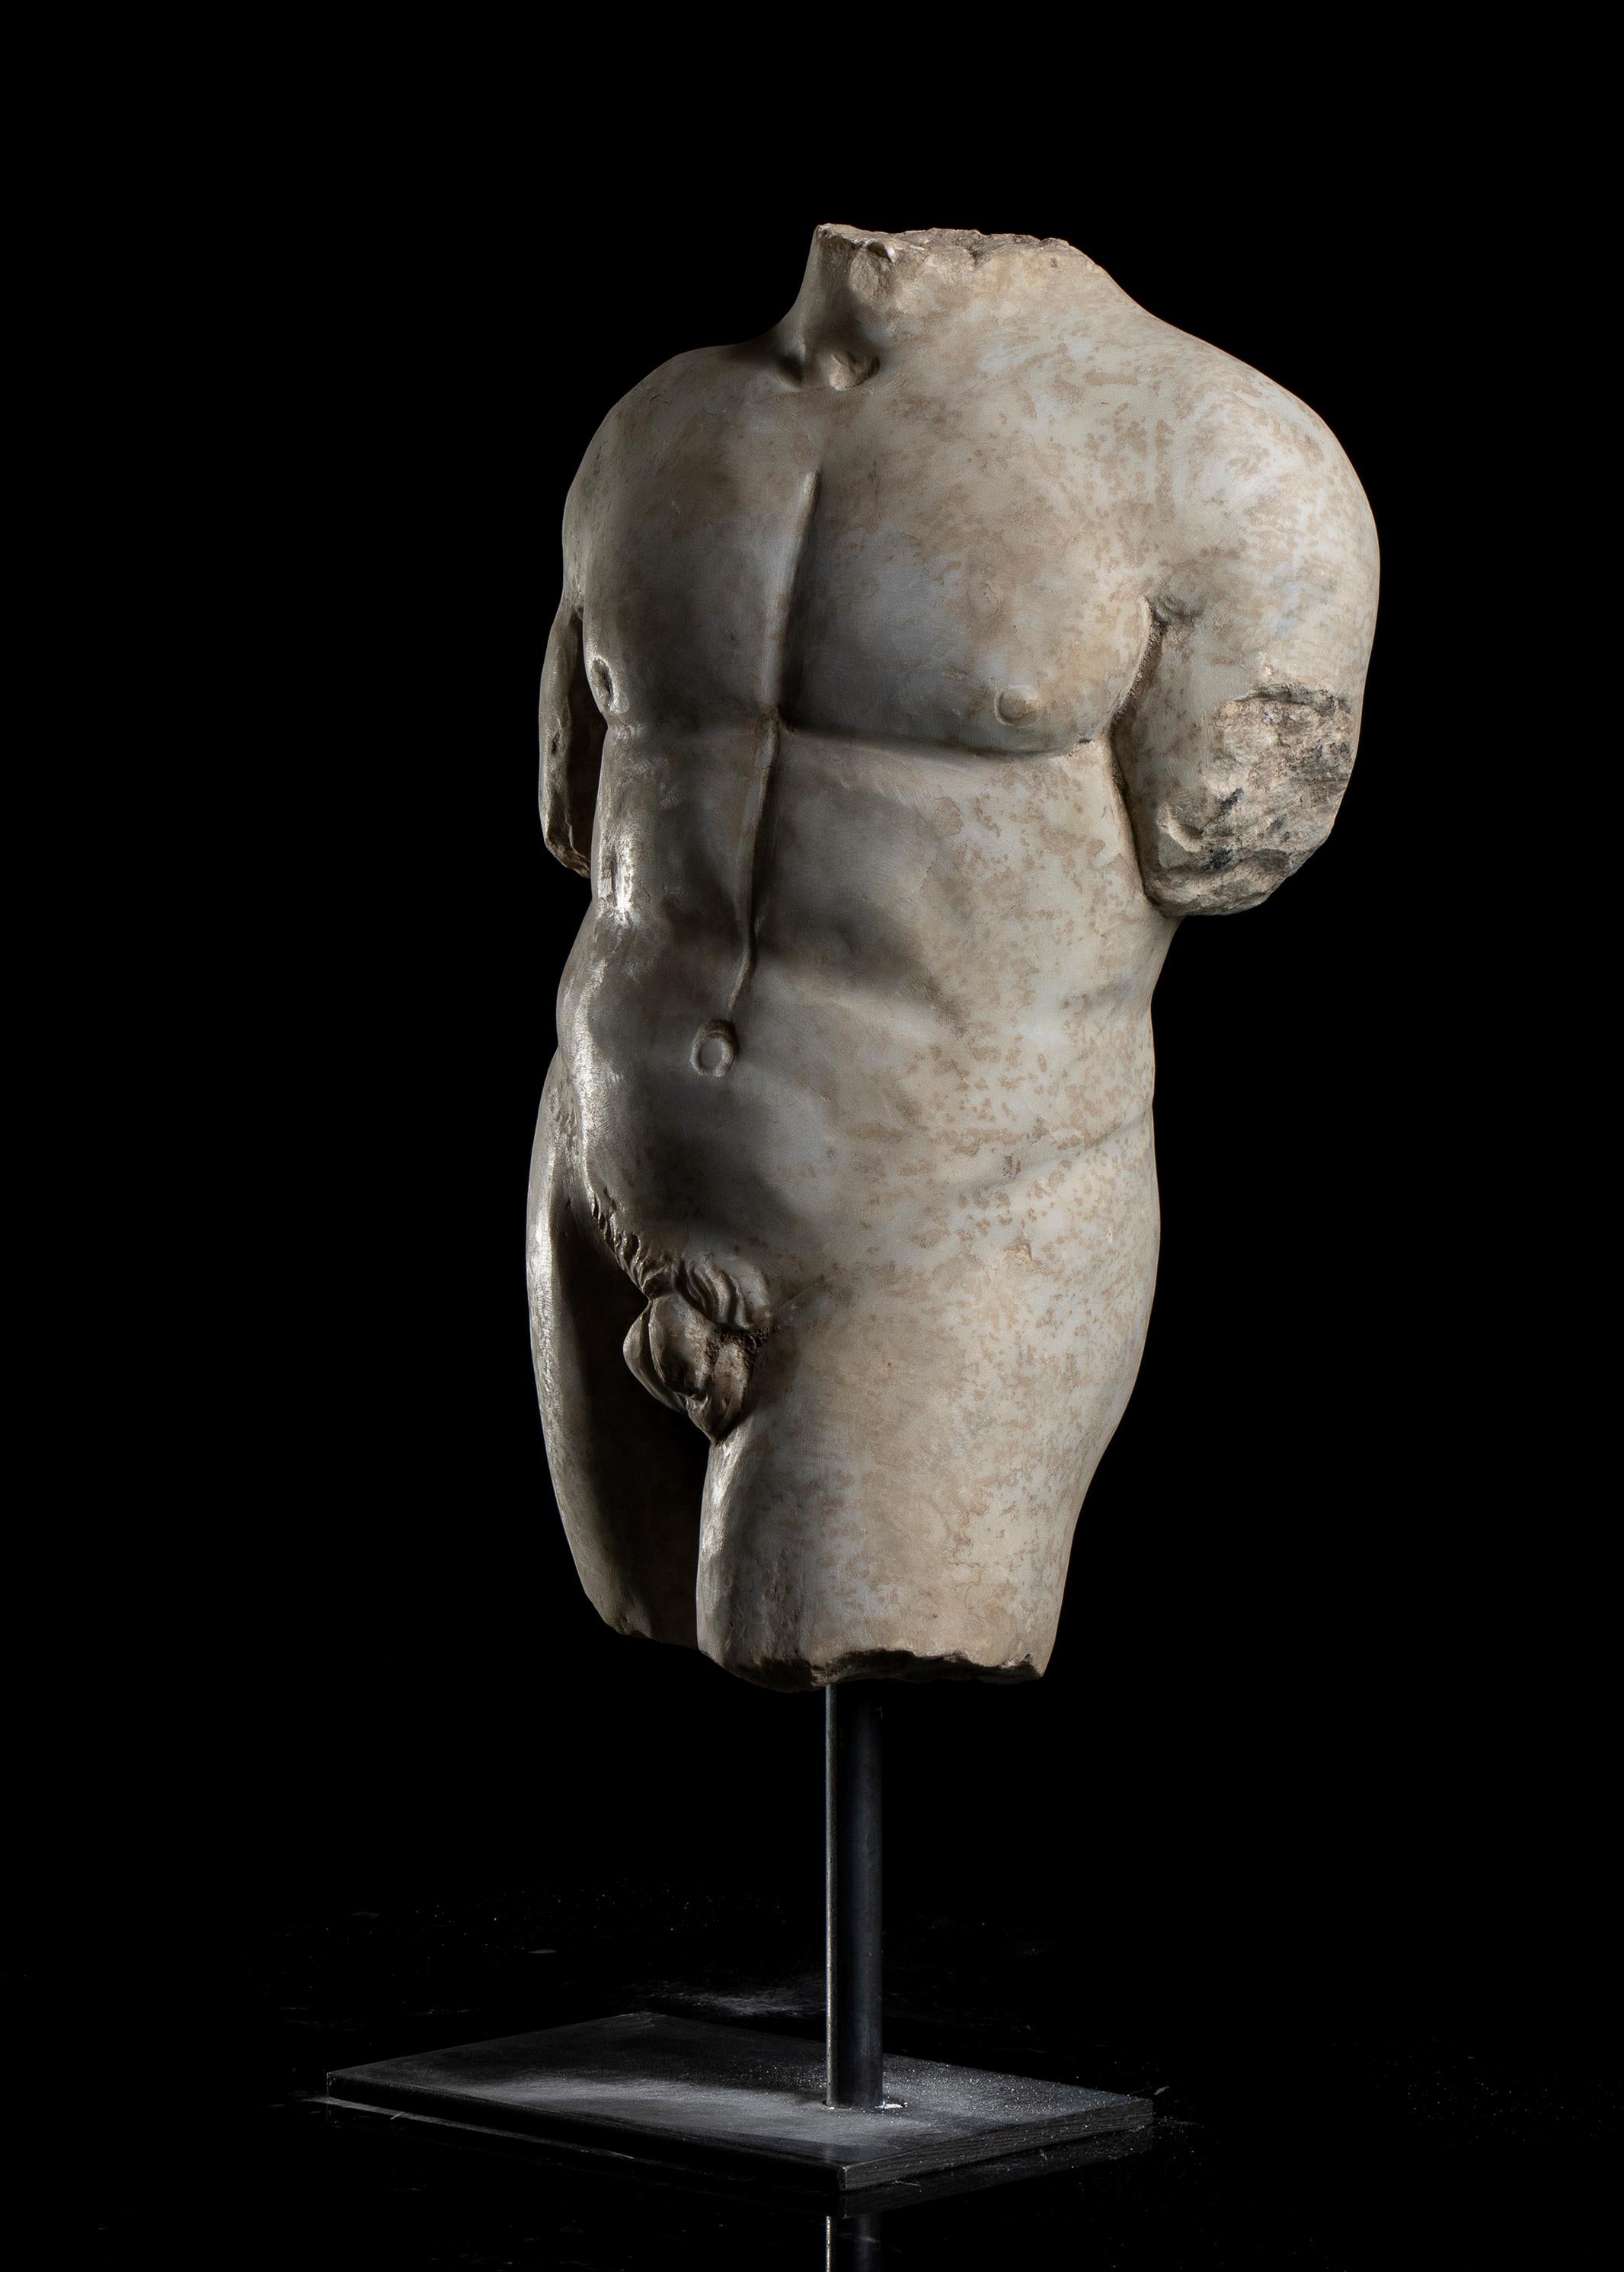 Sculpture torse d'athlète en marbre grec classique romain, style grand tour, Italie centrale, début du 20e siècle.
Le site  corps nu de l'athlète debout sur sa jambe droite, la gauche avancée en position de contrapposto, la sculpture repose sur une